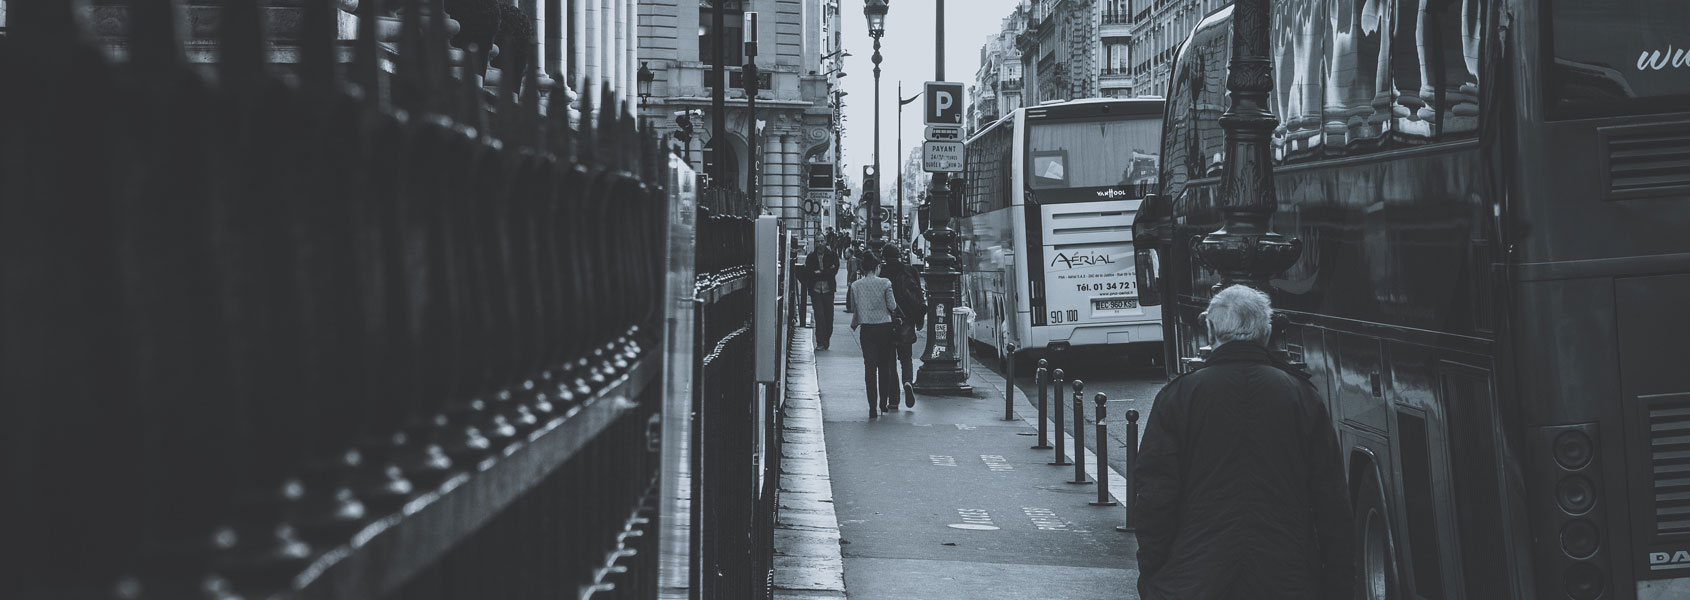 une rue dans Paris